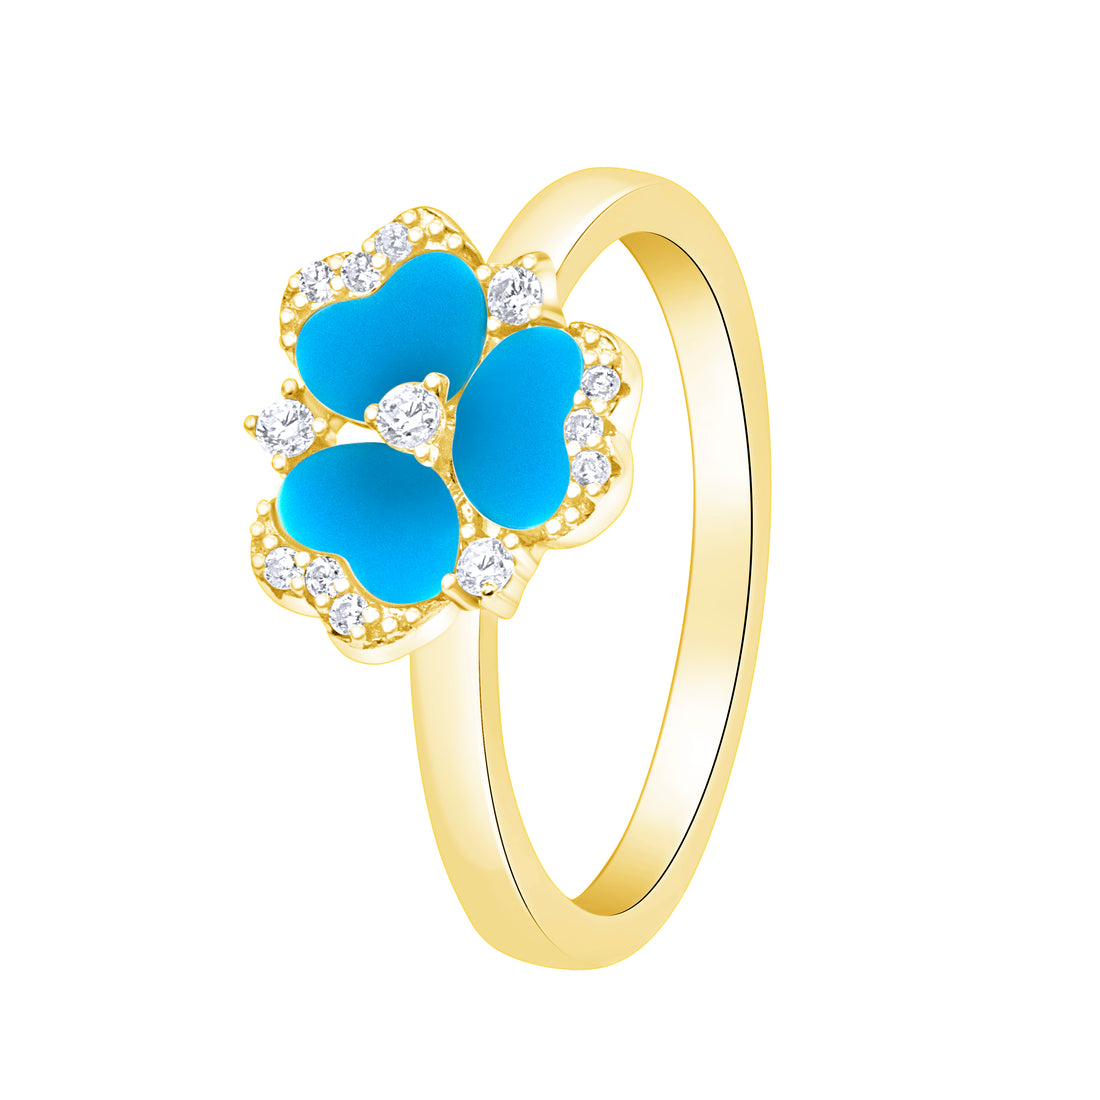 Violet Blue Gold Color Ring